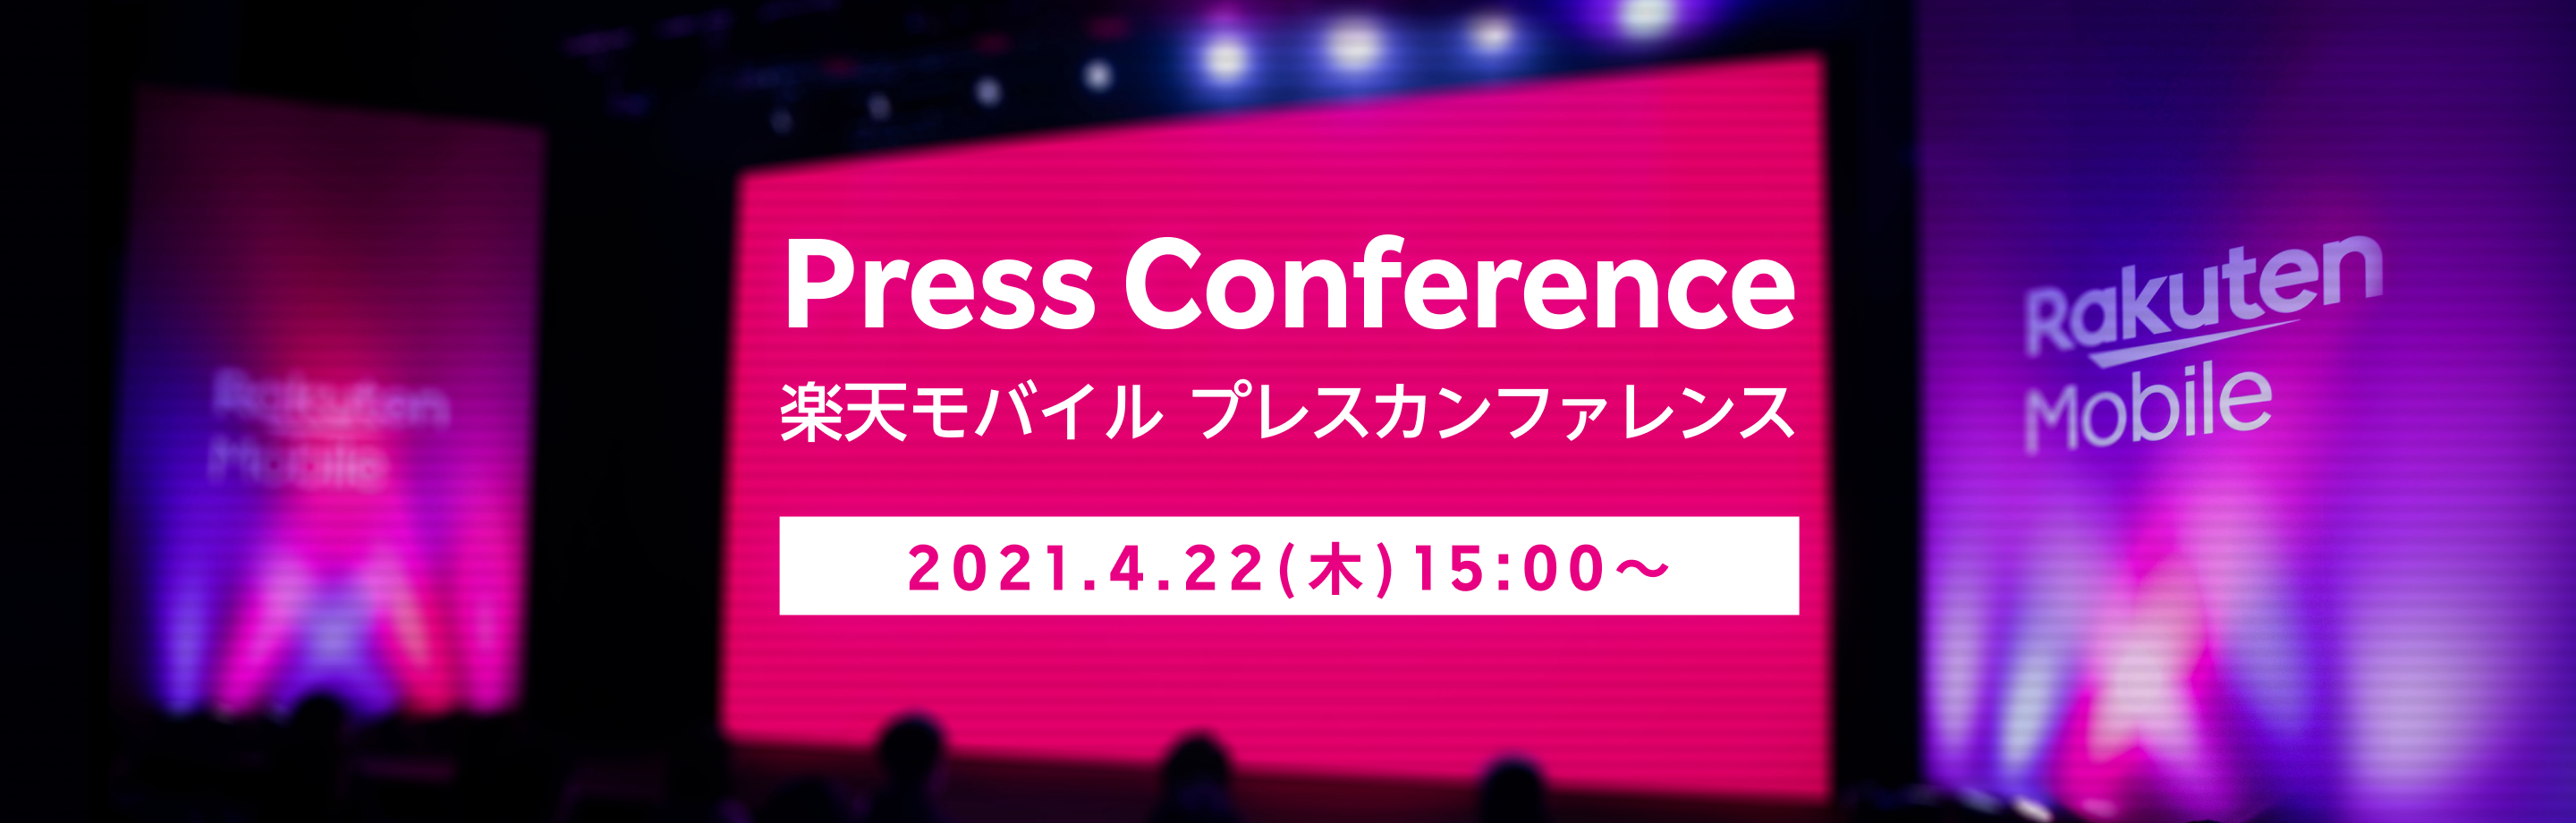 楽天モバイル プレスカンファレンス 2021.4.22(木)15:00開始